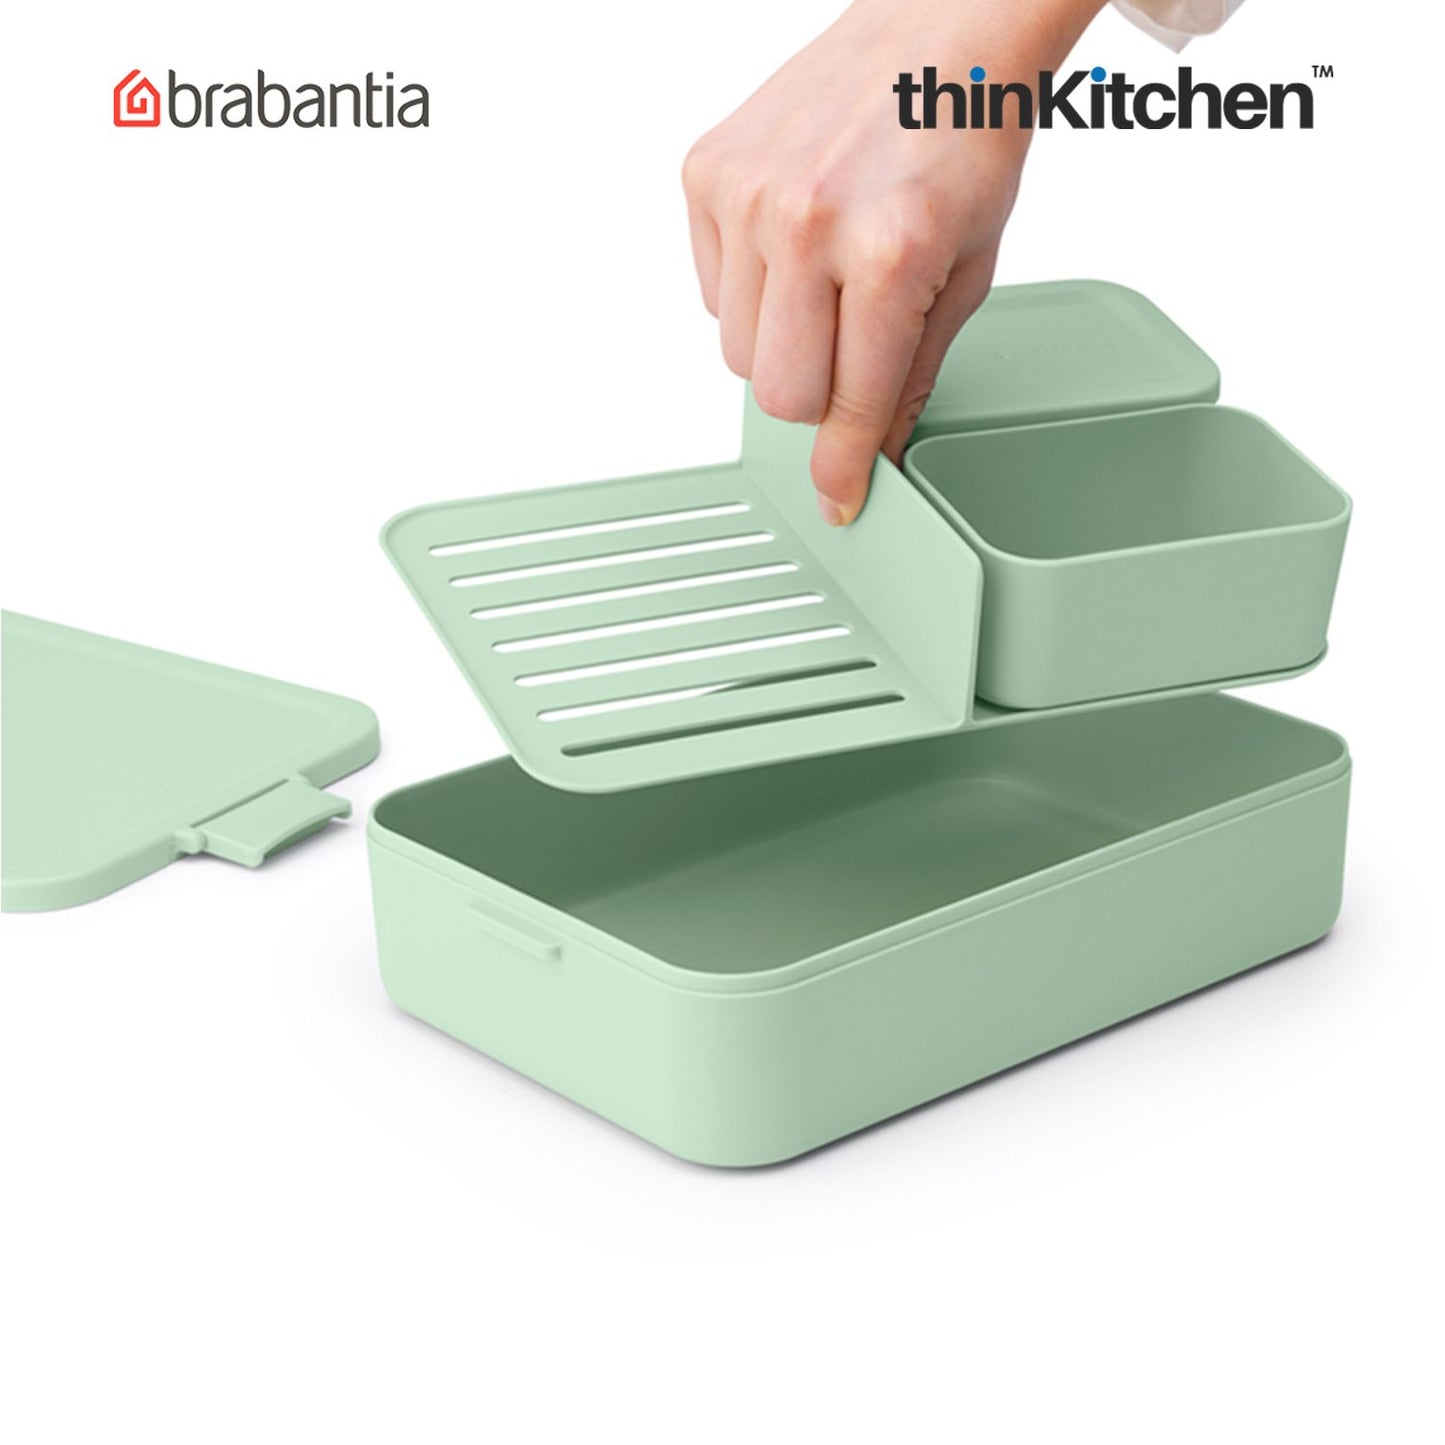 Brabantia Make Take Lunch Box Bento Large Jade Green